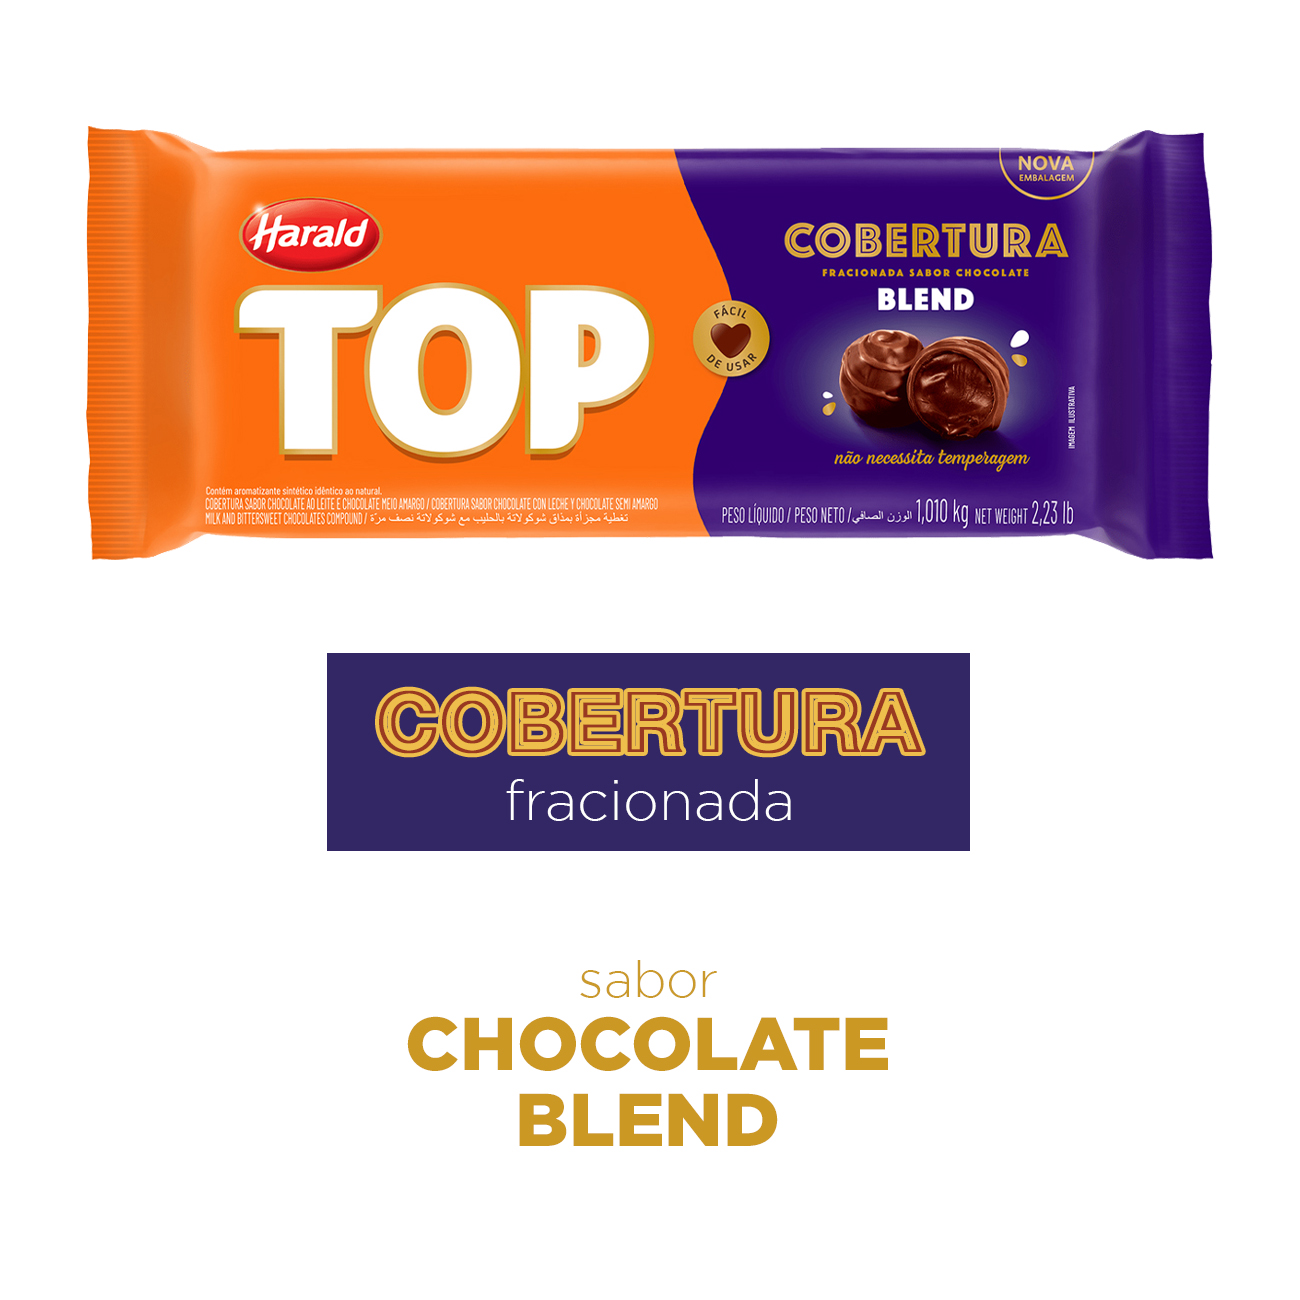 Cobertura de Chocolate em Barra Harald Top Blend 1,05kg